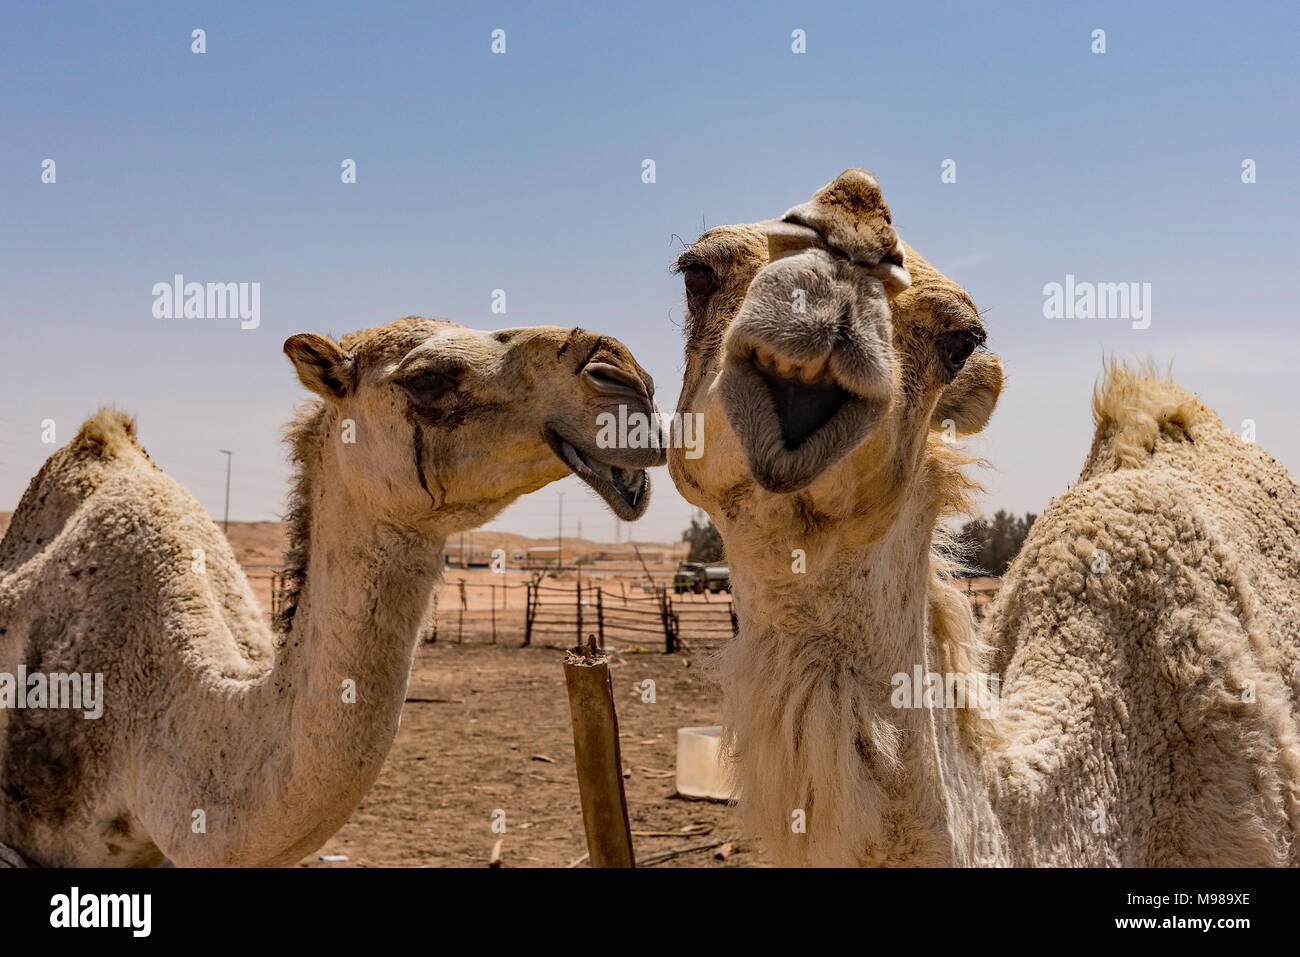 Kamele teilen ein Witz. Foto nordöstlich von Riad, Saudi-Arabien auf dem Weg zur Thumamah National Park. Stockfoto